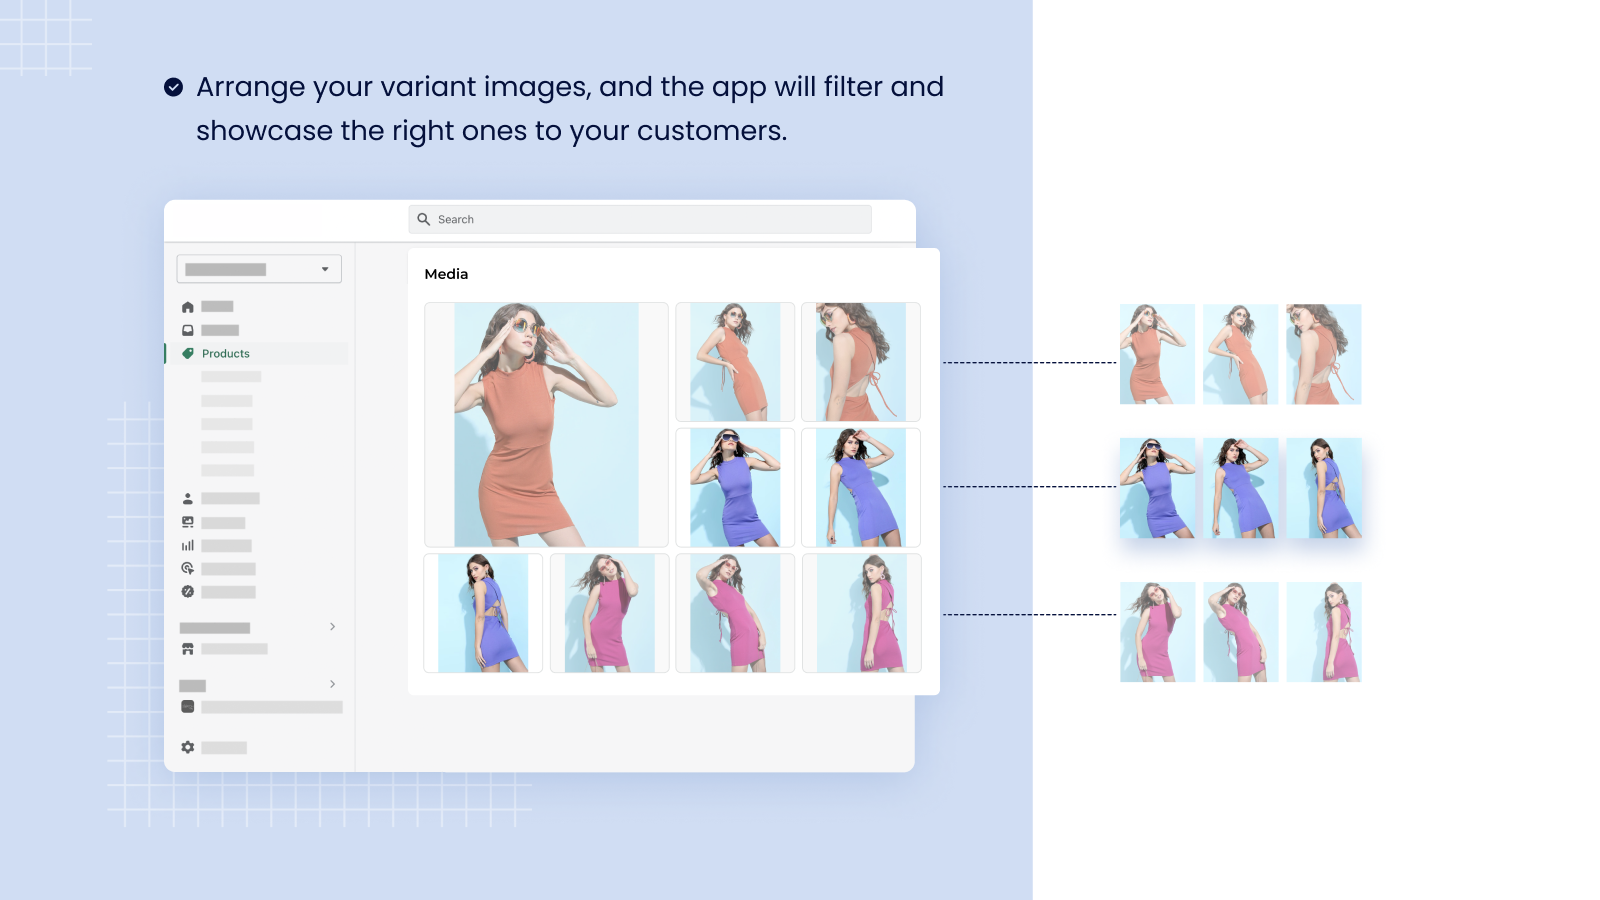 Variantenbildautomator Shopify App zum Gruppieren von Variantenbildern